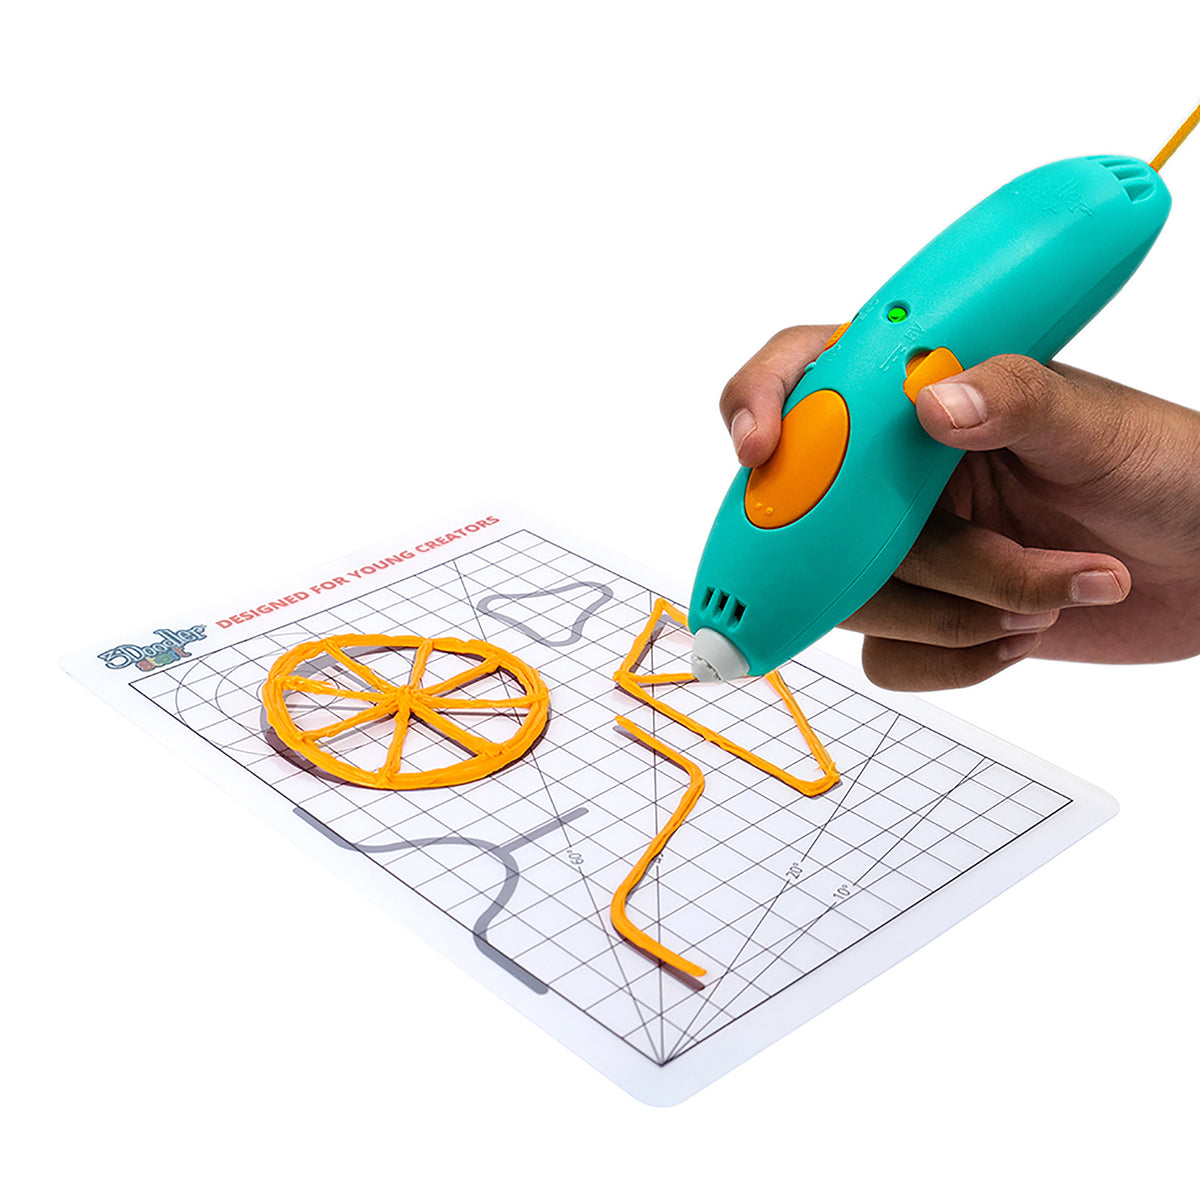 Doodler Create 3D Pen from Apollo Box